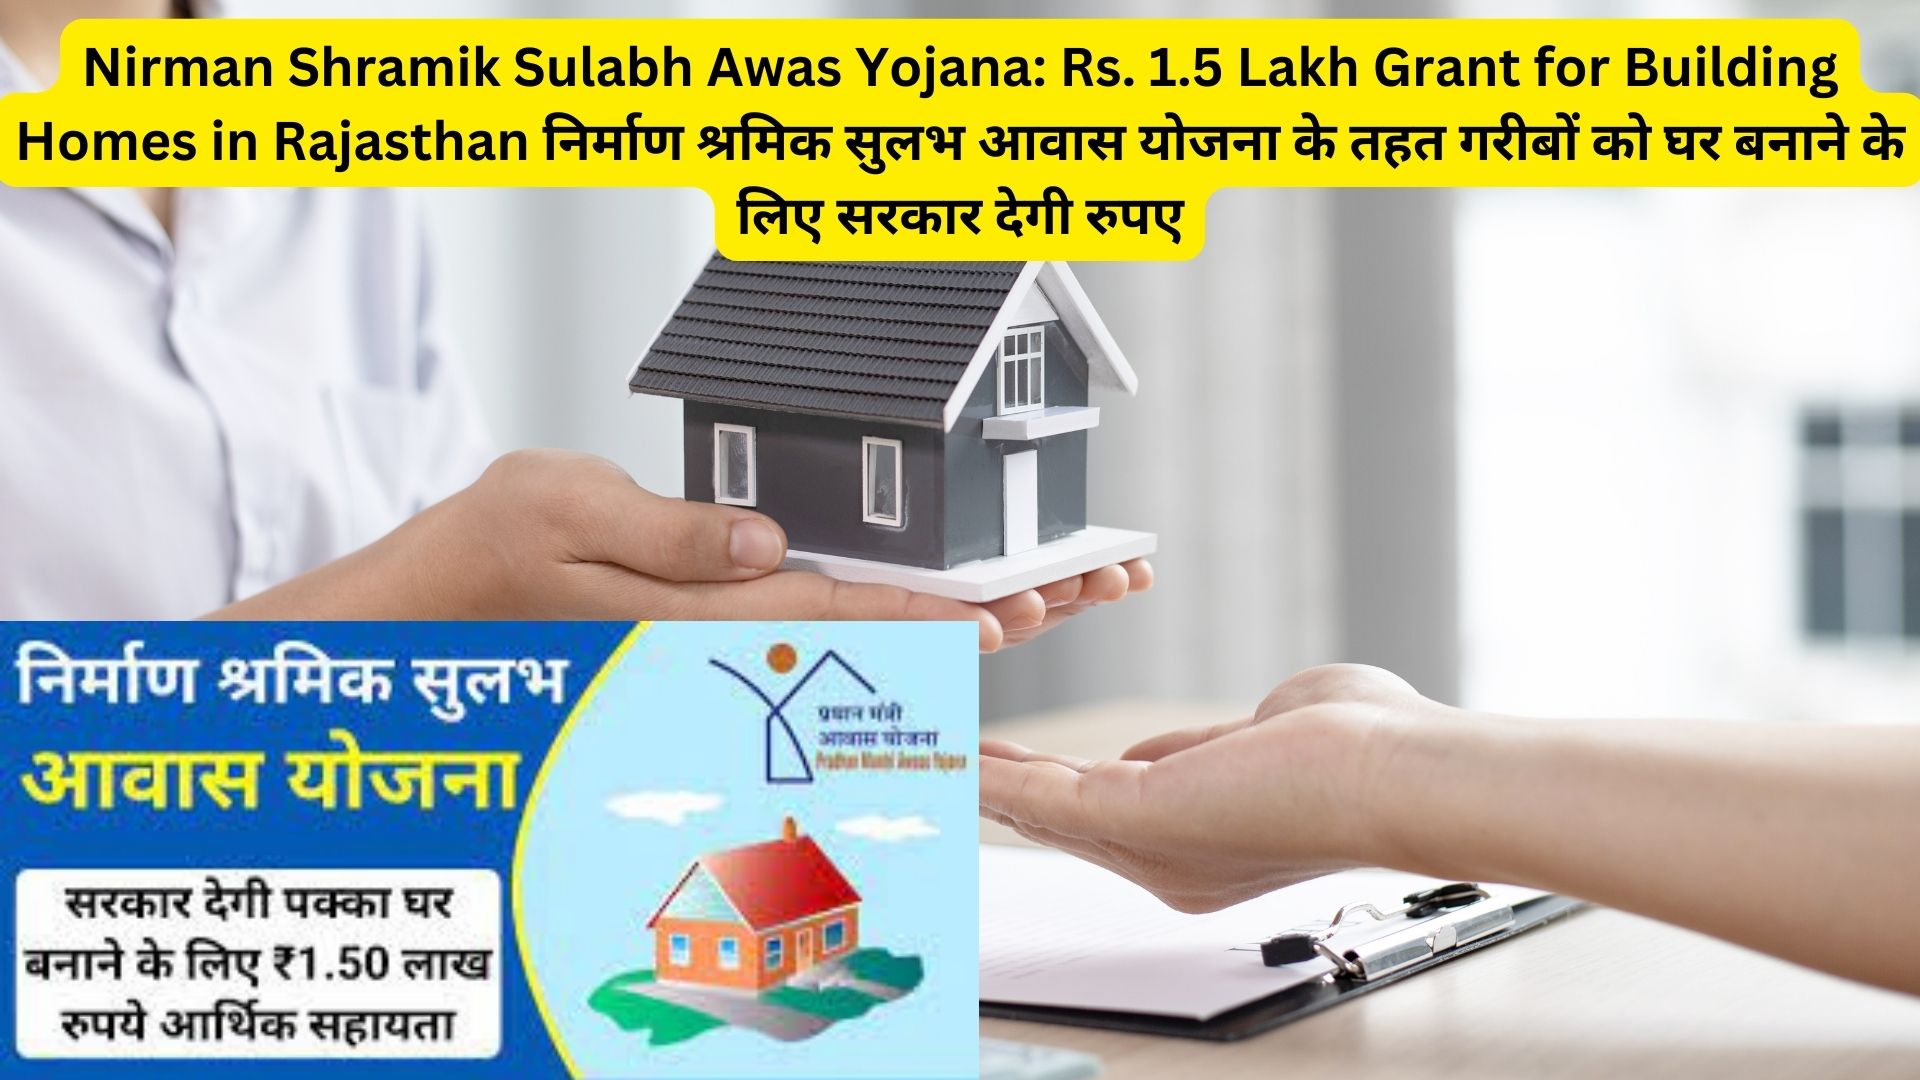 Nirman Shramik Sulabh Awas Yojana: Rs. 1.5 Lakh Grant for Building Homes in Rajasthan निर्माण श्रमिक सुलभ आवास योजना के तहत गरीबों को घर बनाने के लिए सरकार देगी रुपए